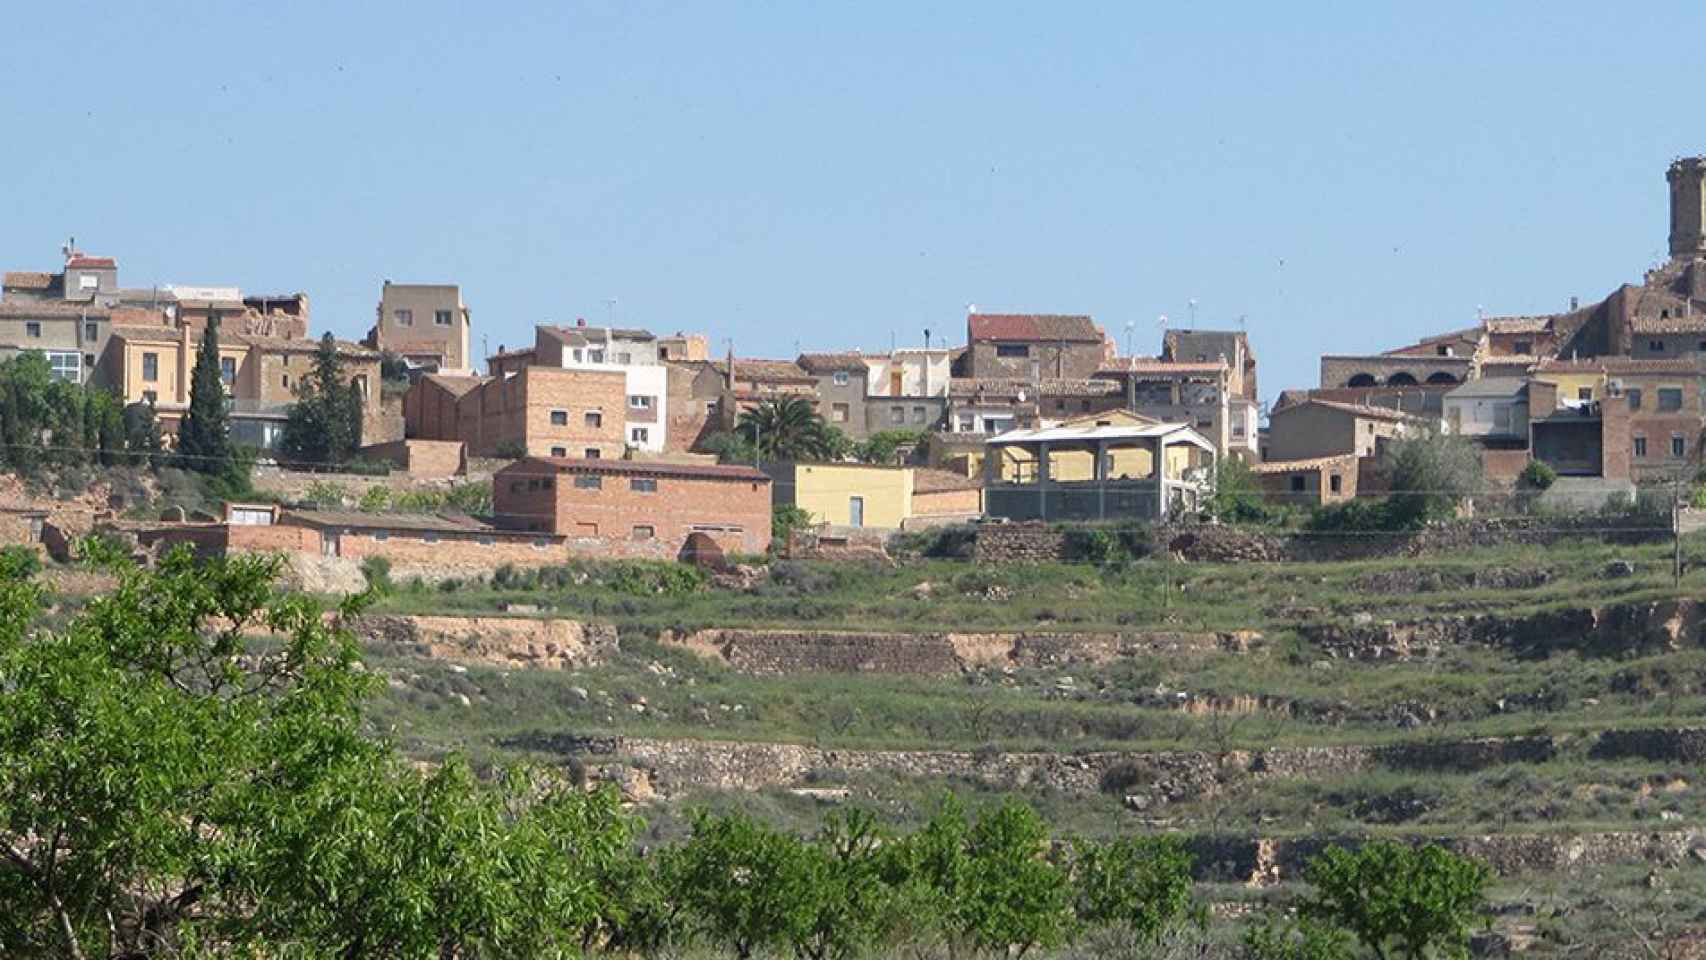 El municipio de Granyena de les Garrigues / CG